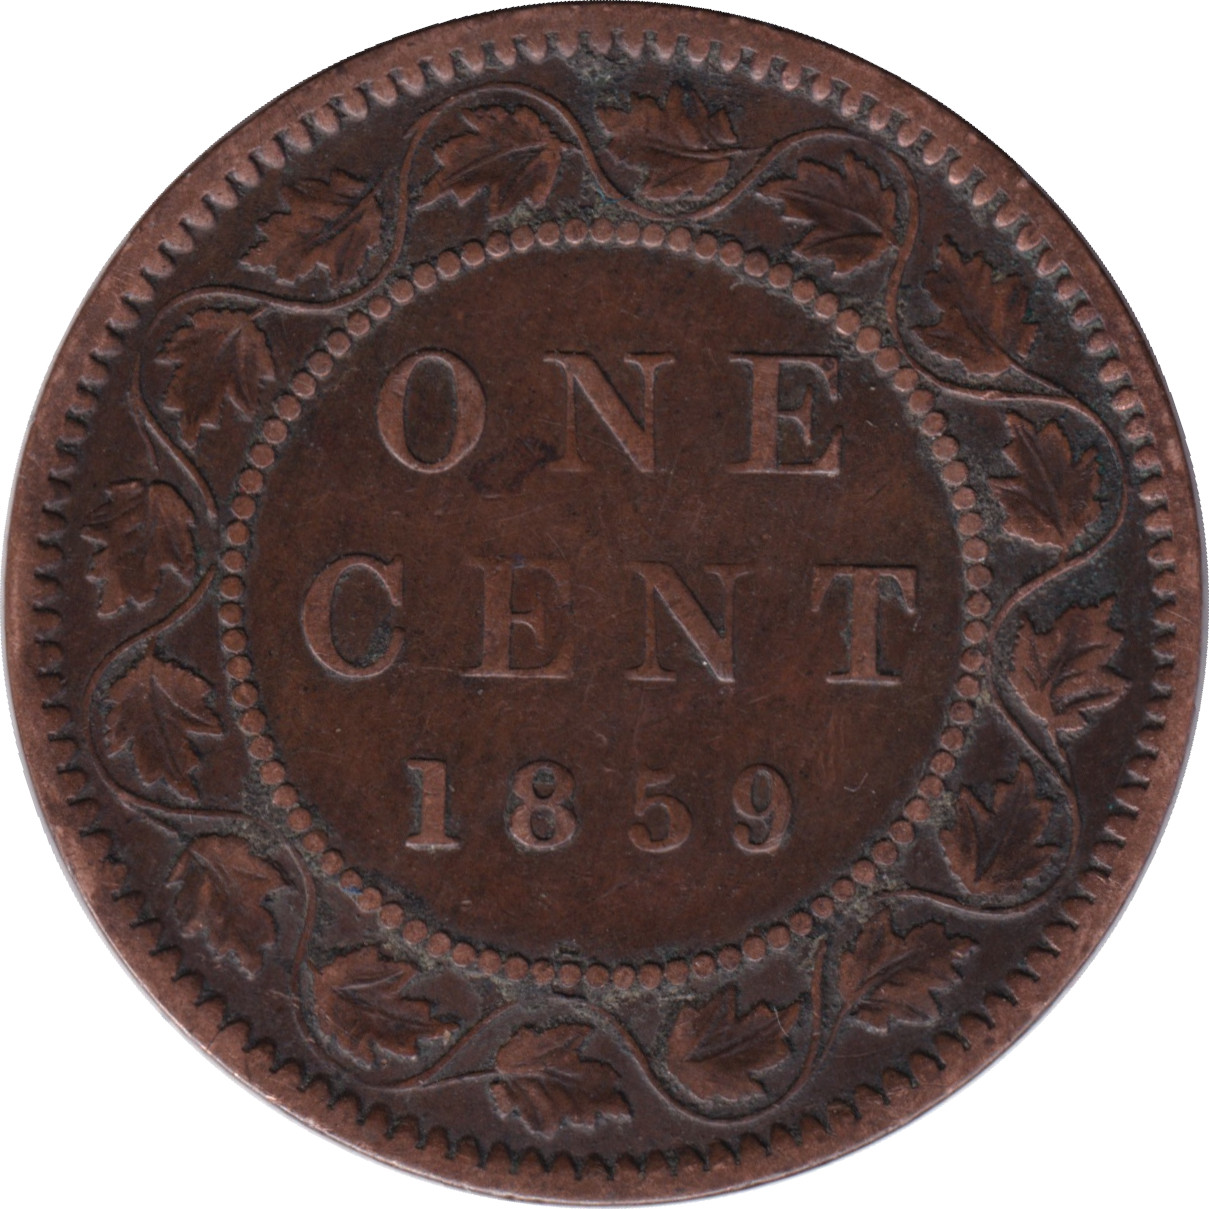 1 cent - Victoria - Tête laurée